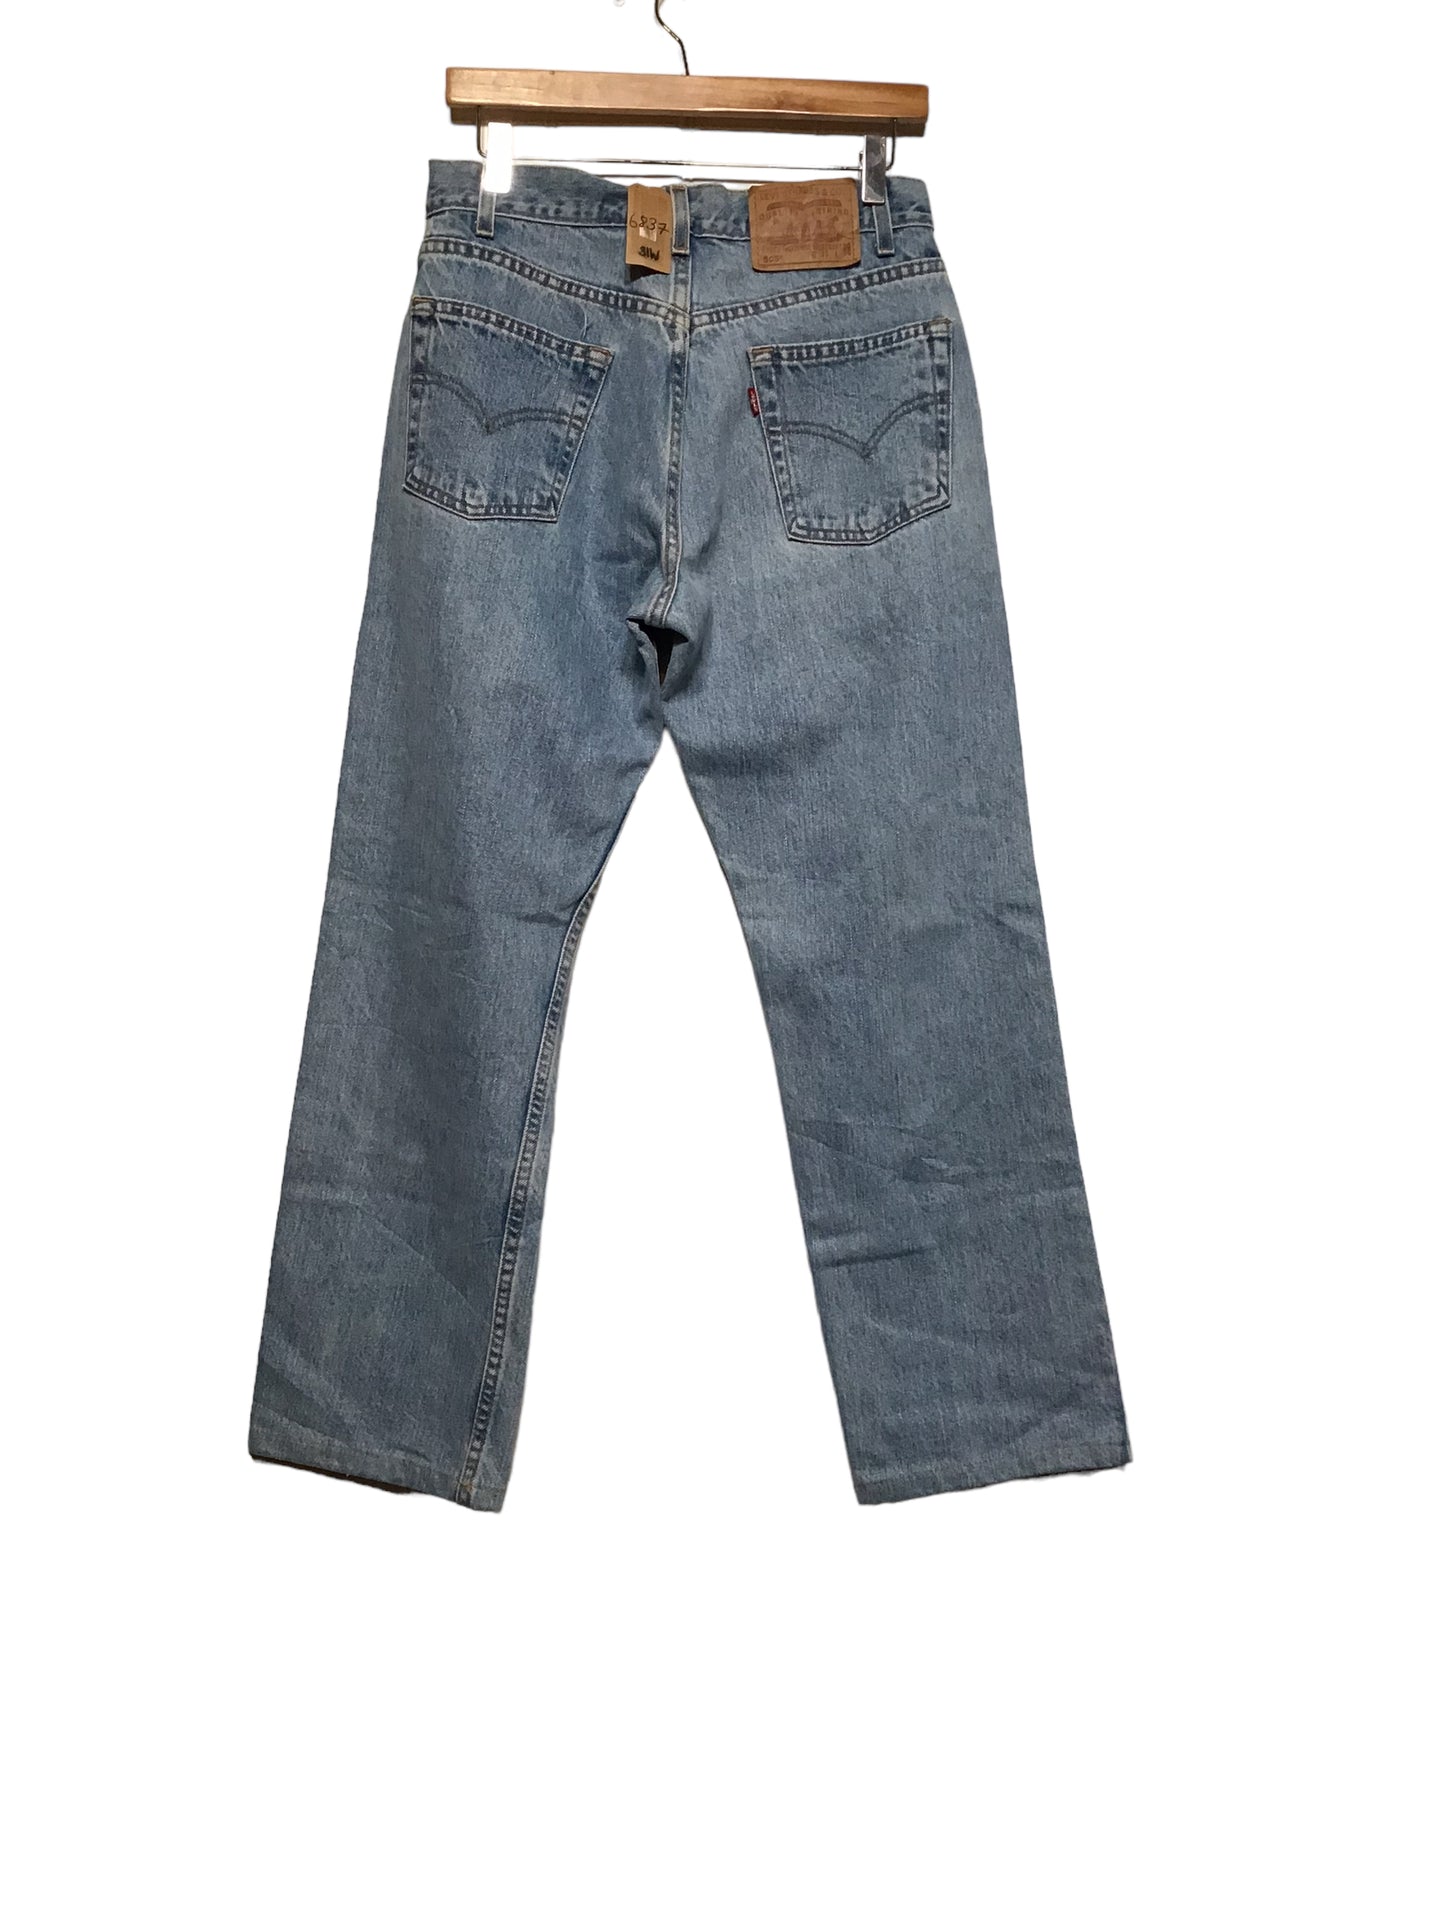 Levi 505 Jeans (31x30)